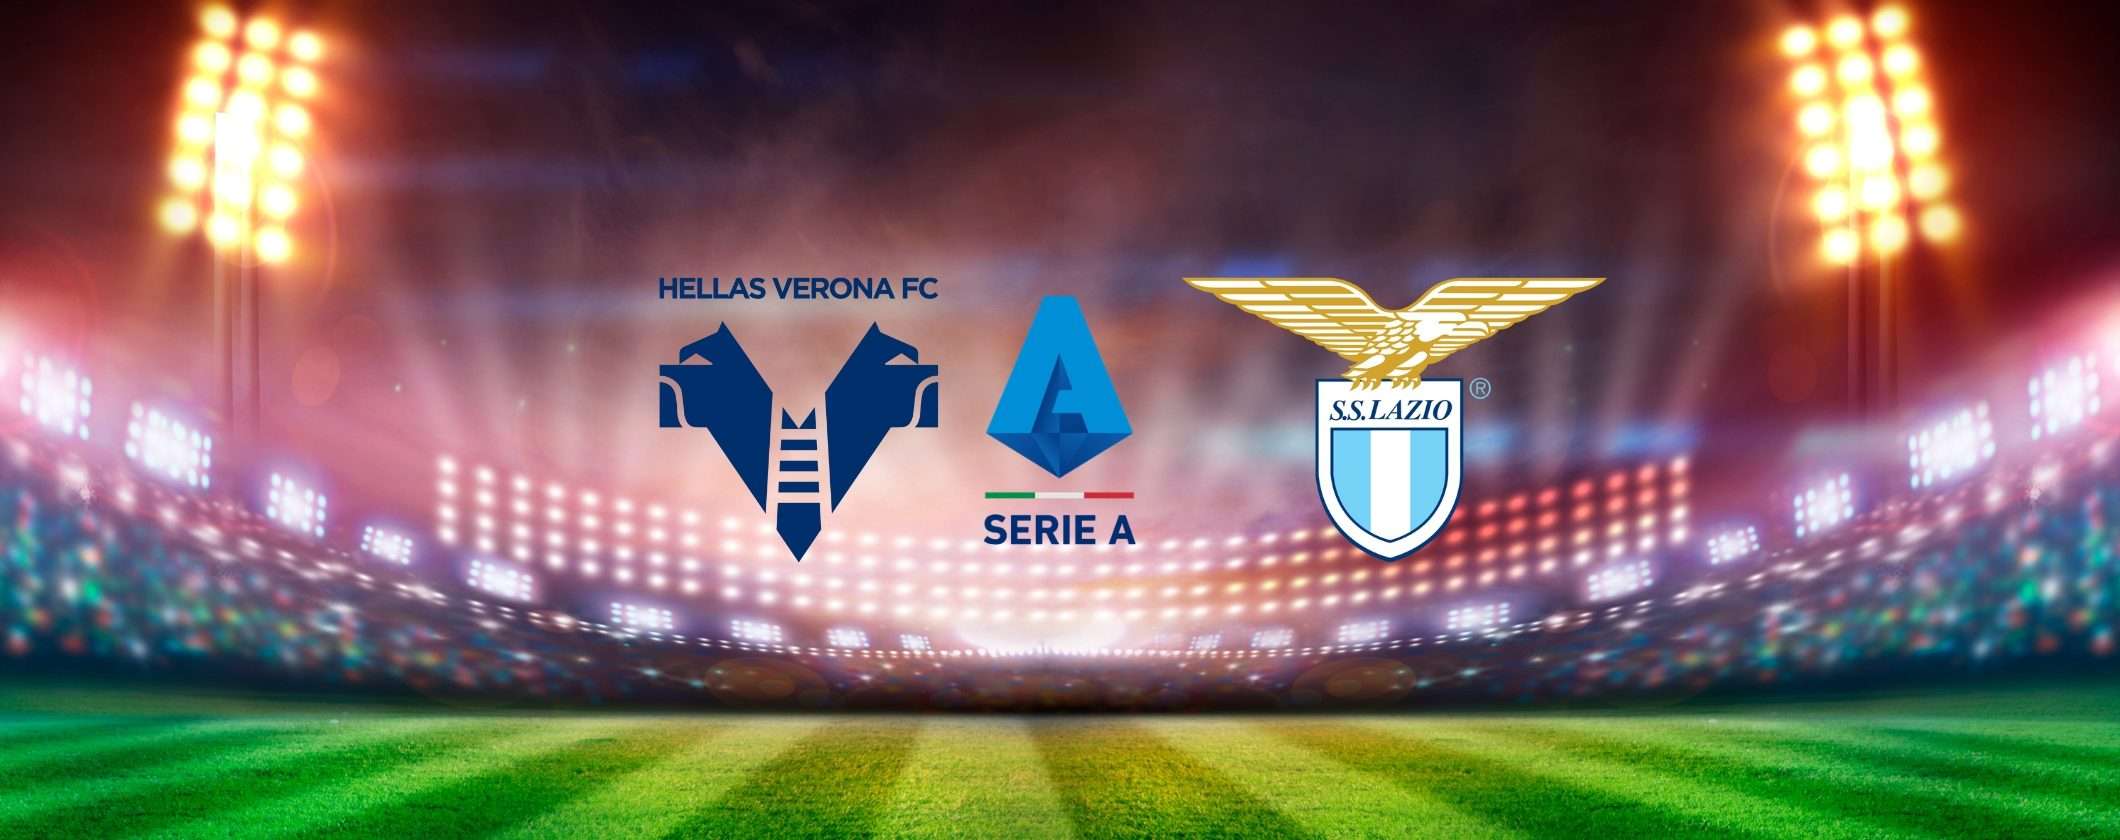 Verona-Lazio: formazioni e live match in streaming